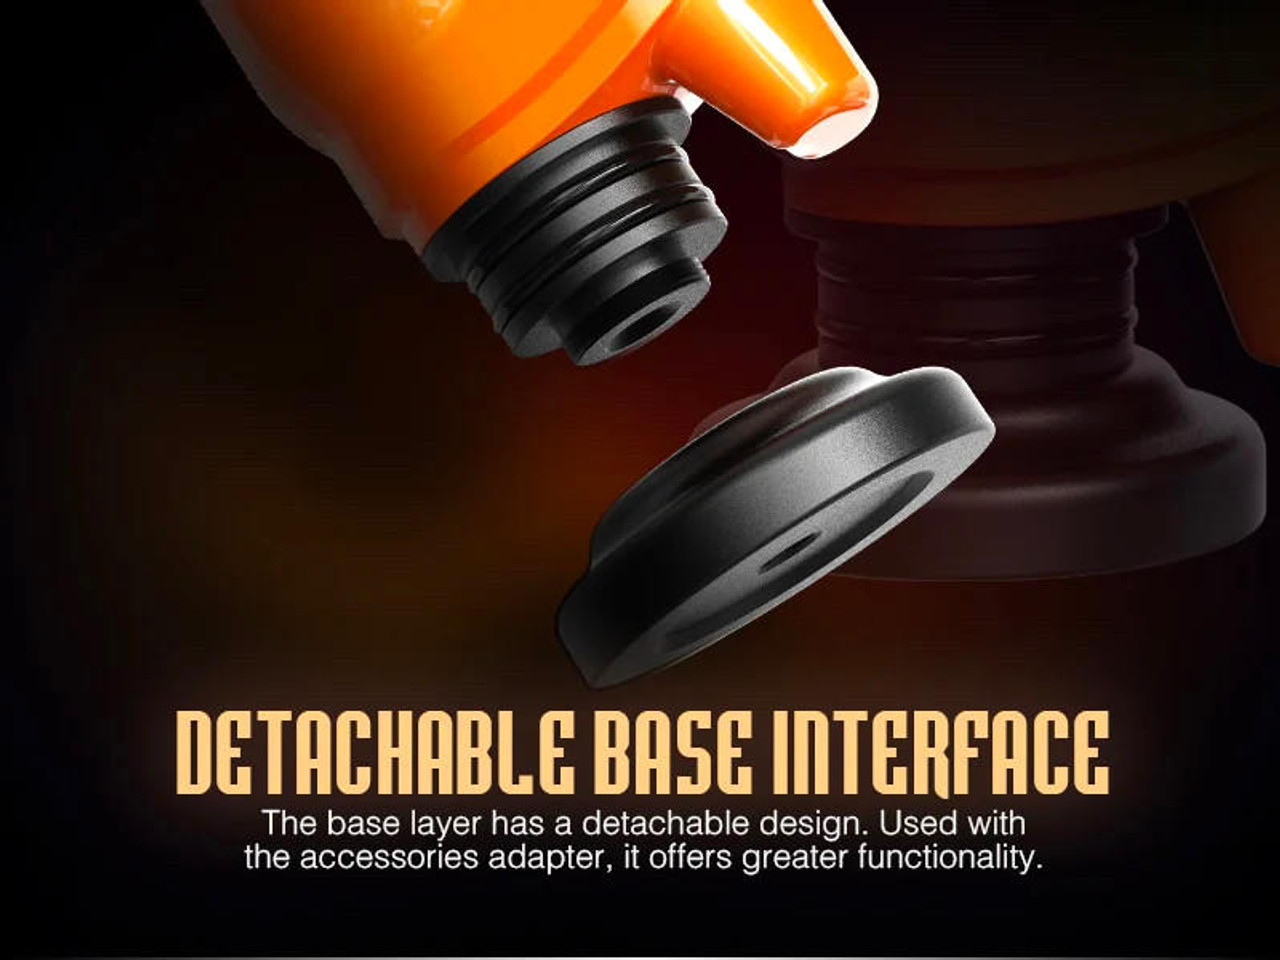 Lookah Seahorse X Orange 3 in 1: E-Nectar Collector, Wax Pen, and Portable  E-Nail